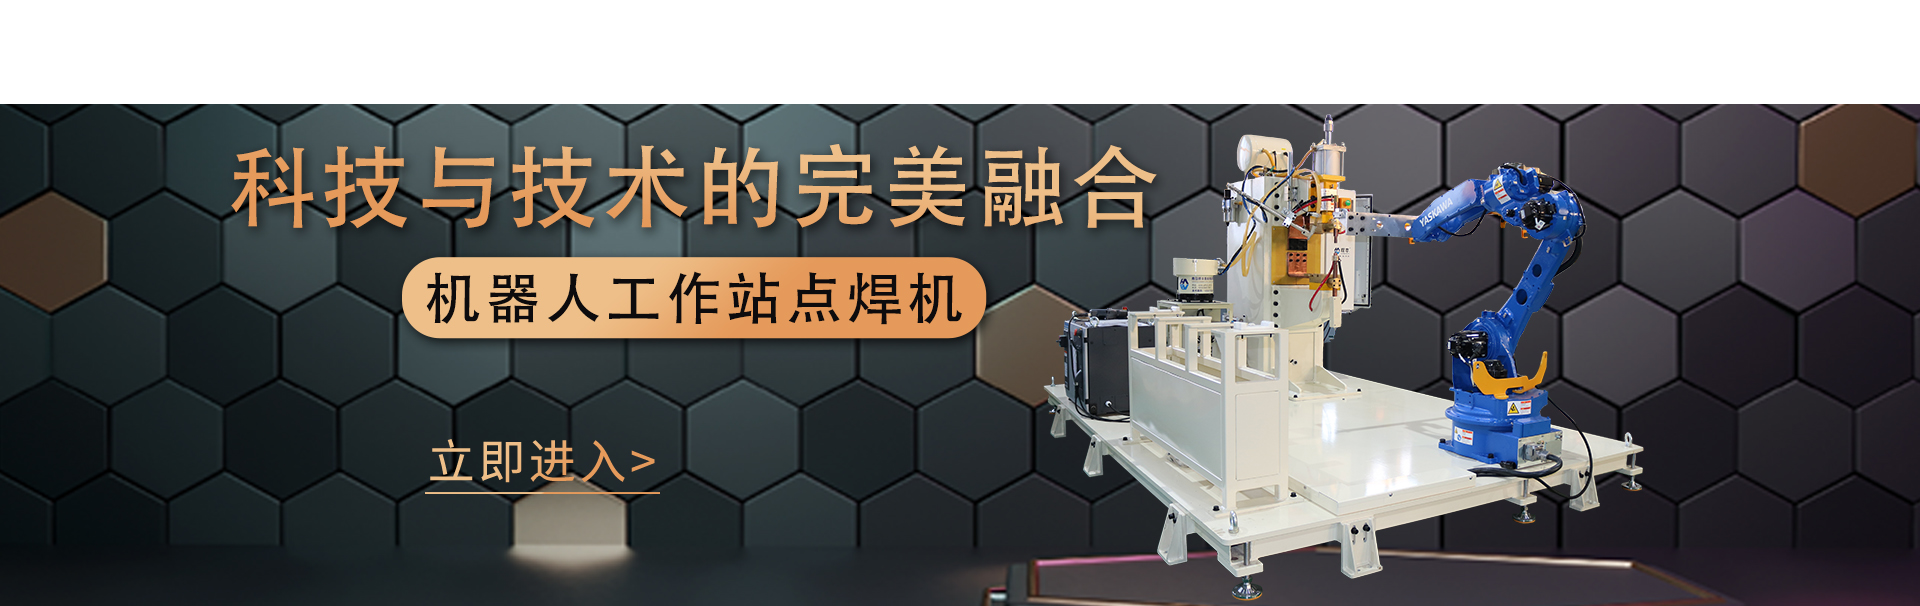 官网首页机器人工作站banner